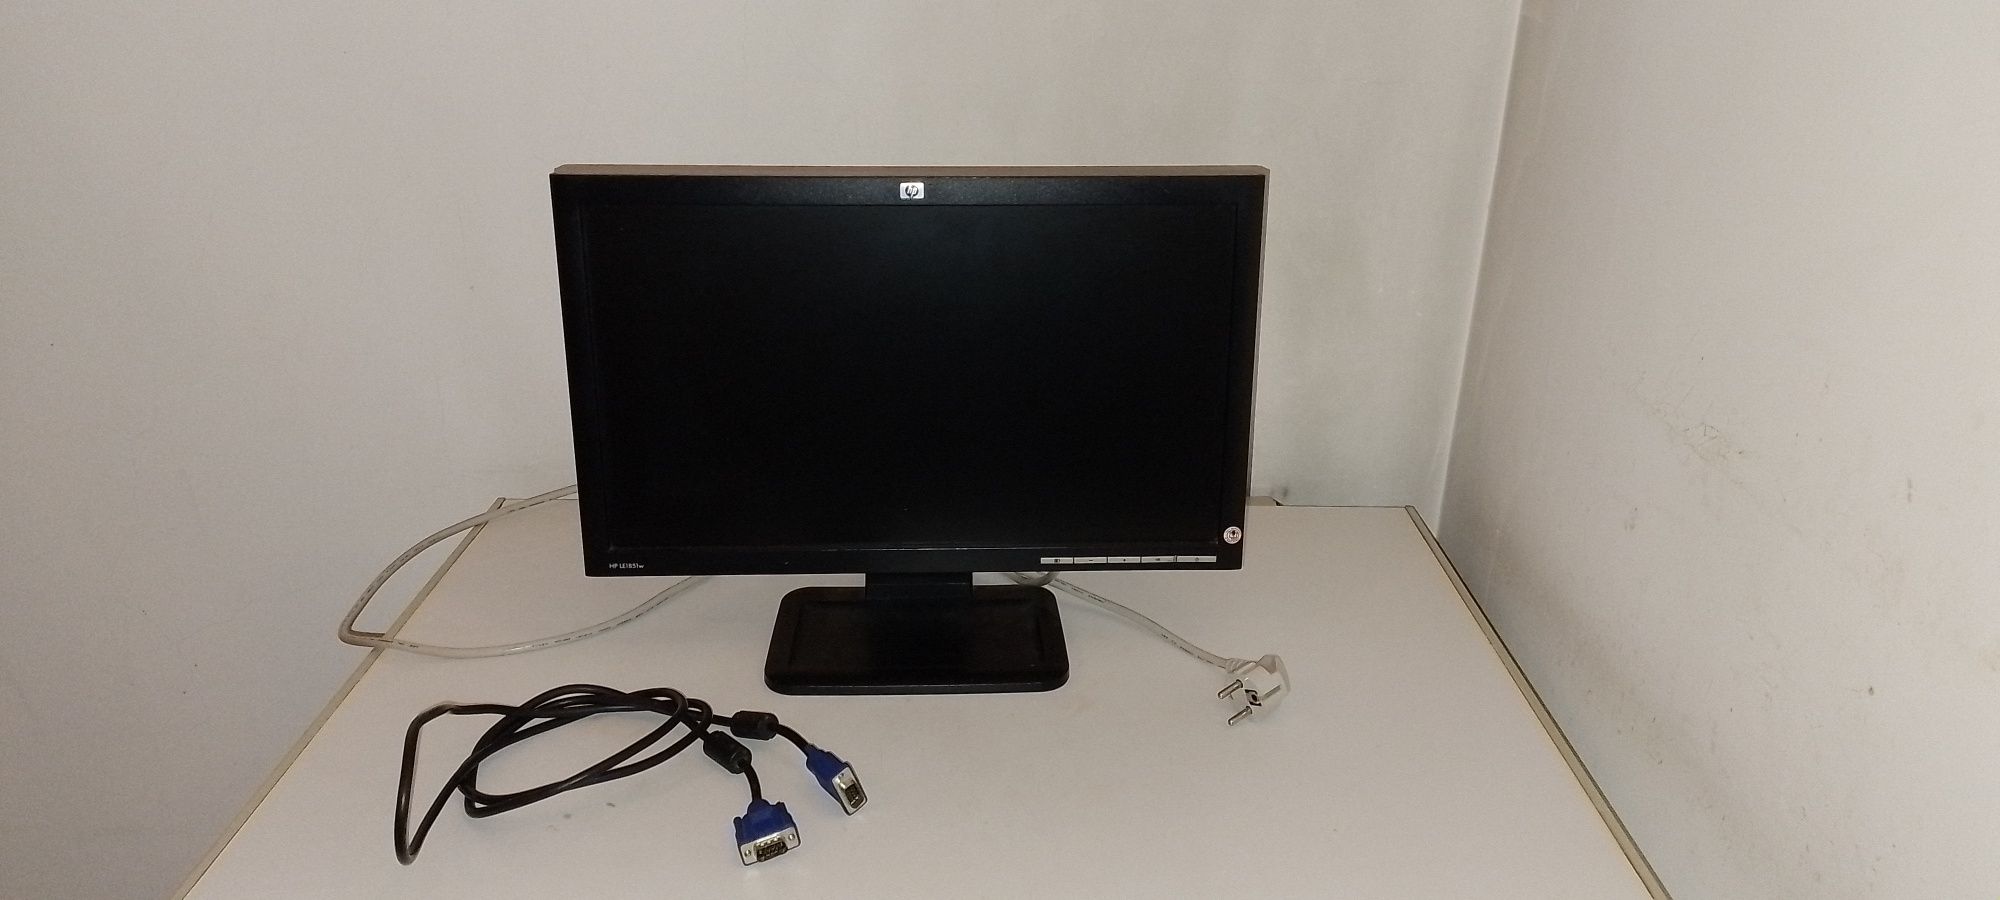 Monitor LCD de computador como novo